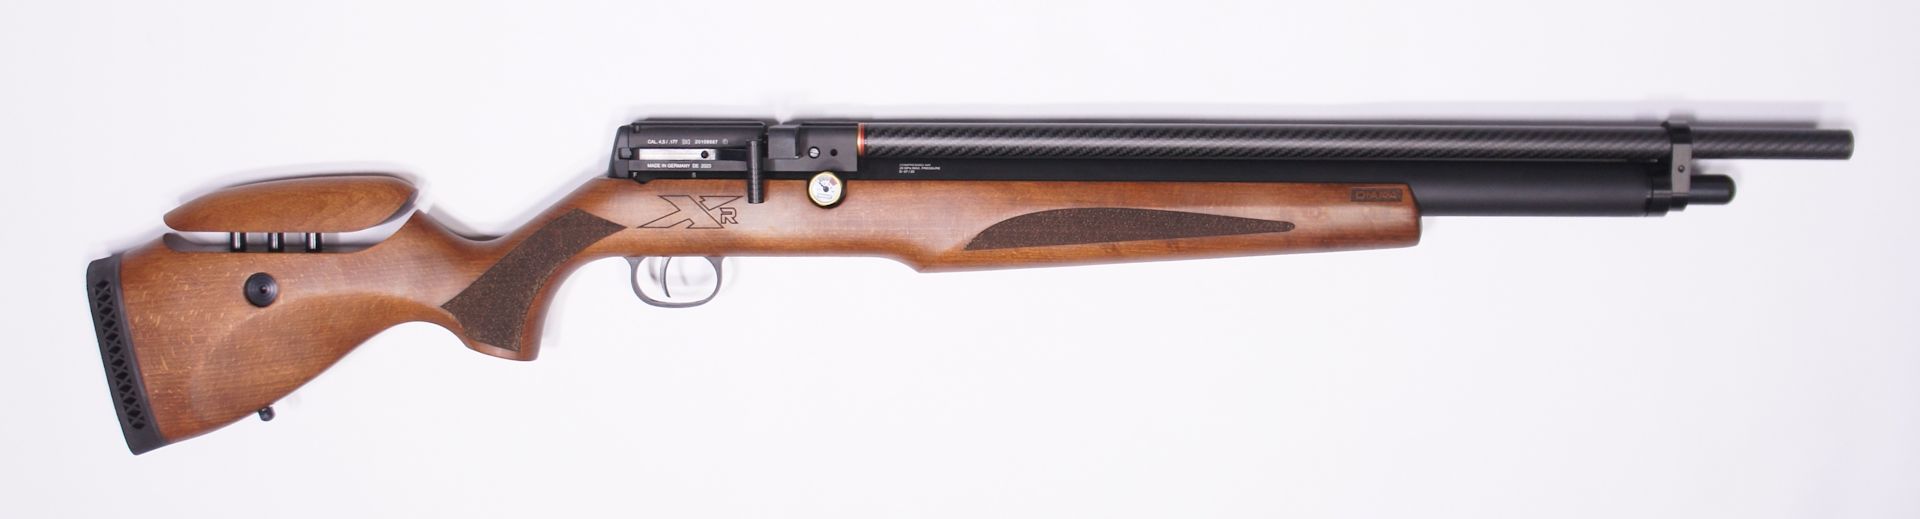 Diana XR200 PCP Pressluftgewehr Premium Kal. .177 Diabolo mit 14-Schuss Magazin